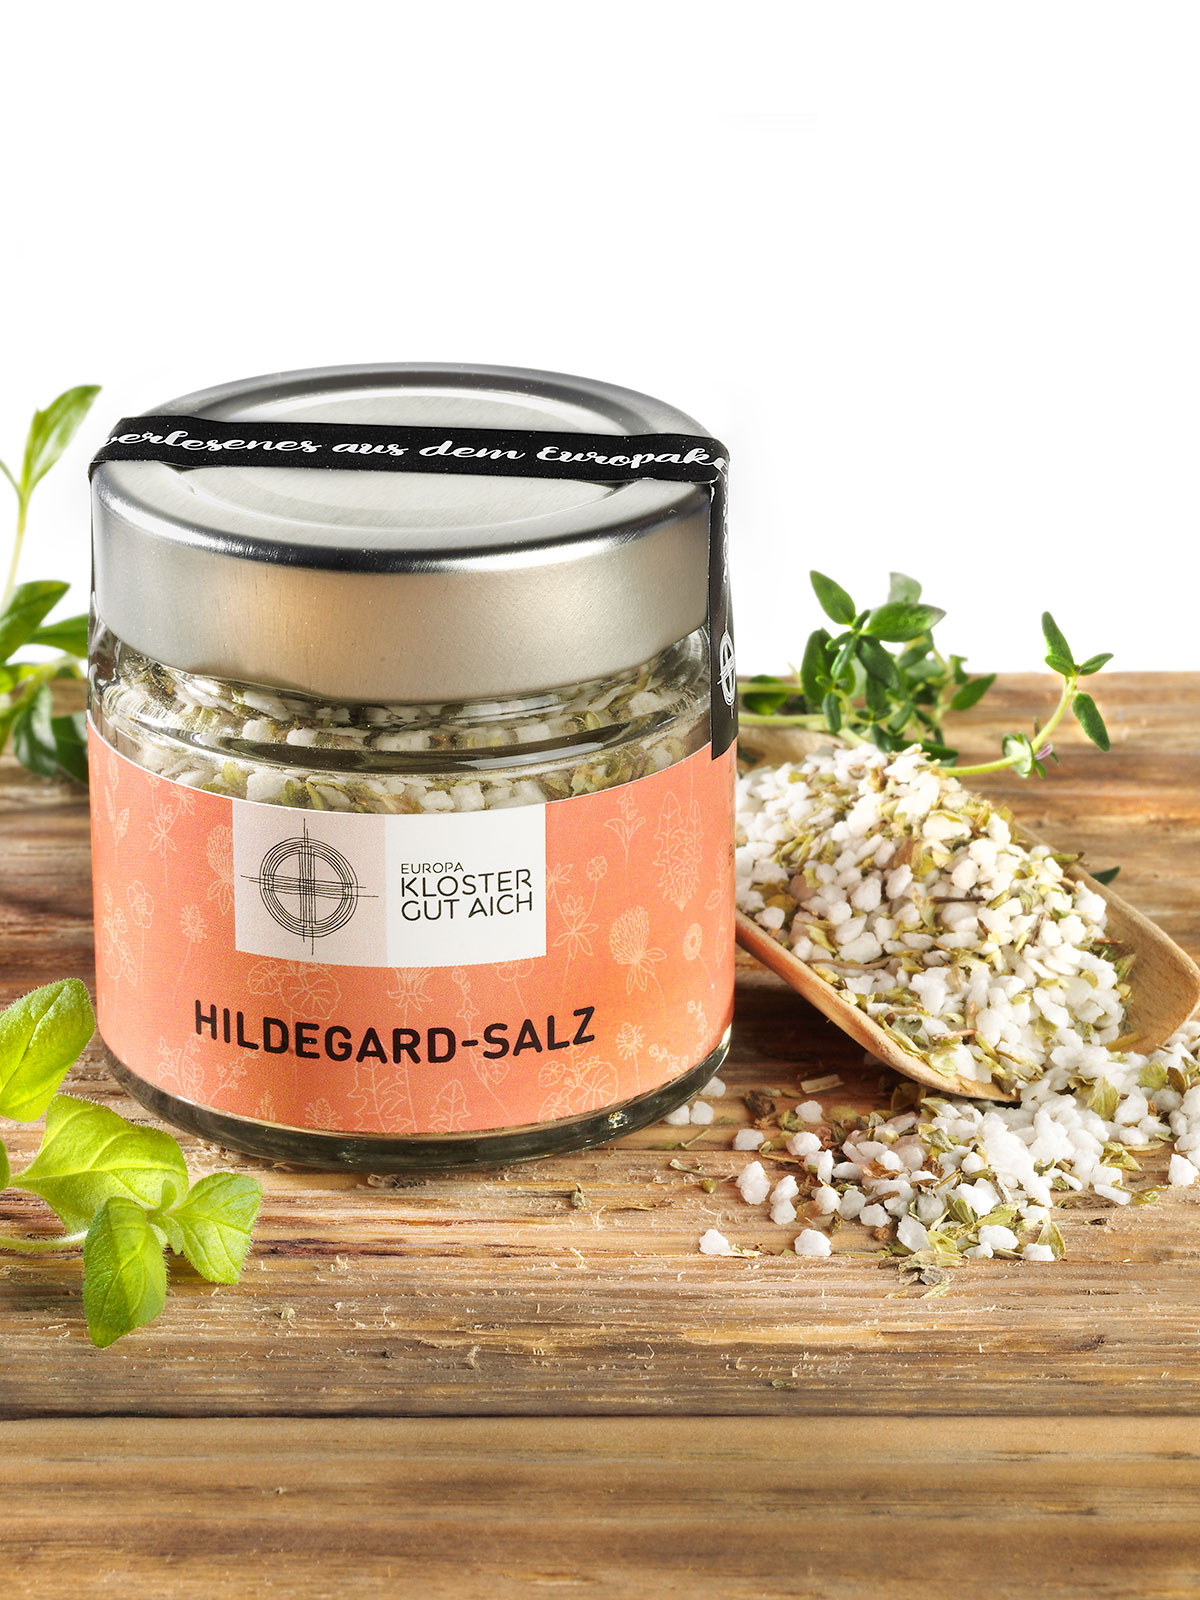 Hildegard-Salz